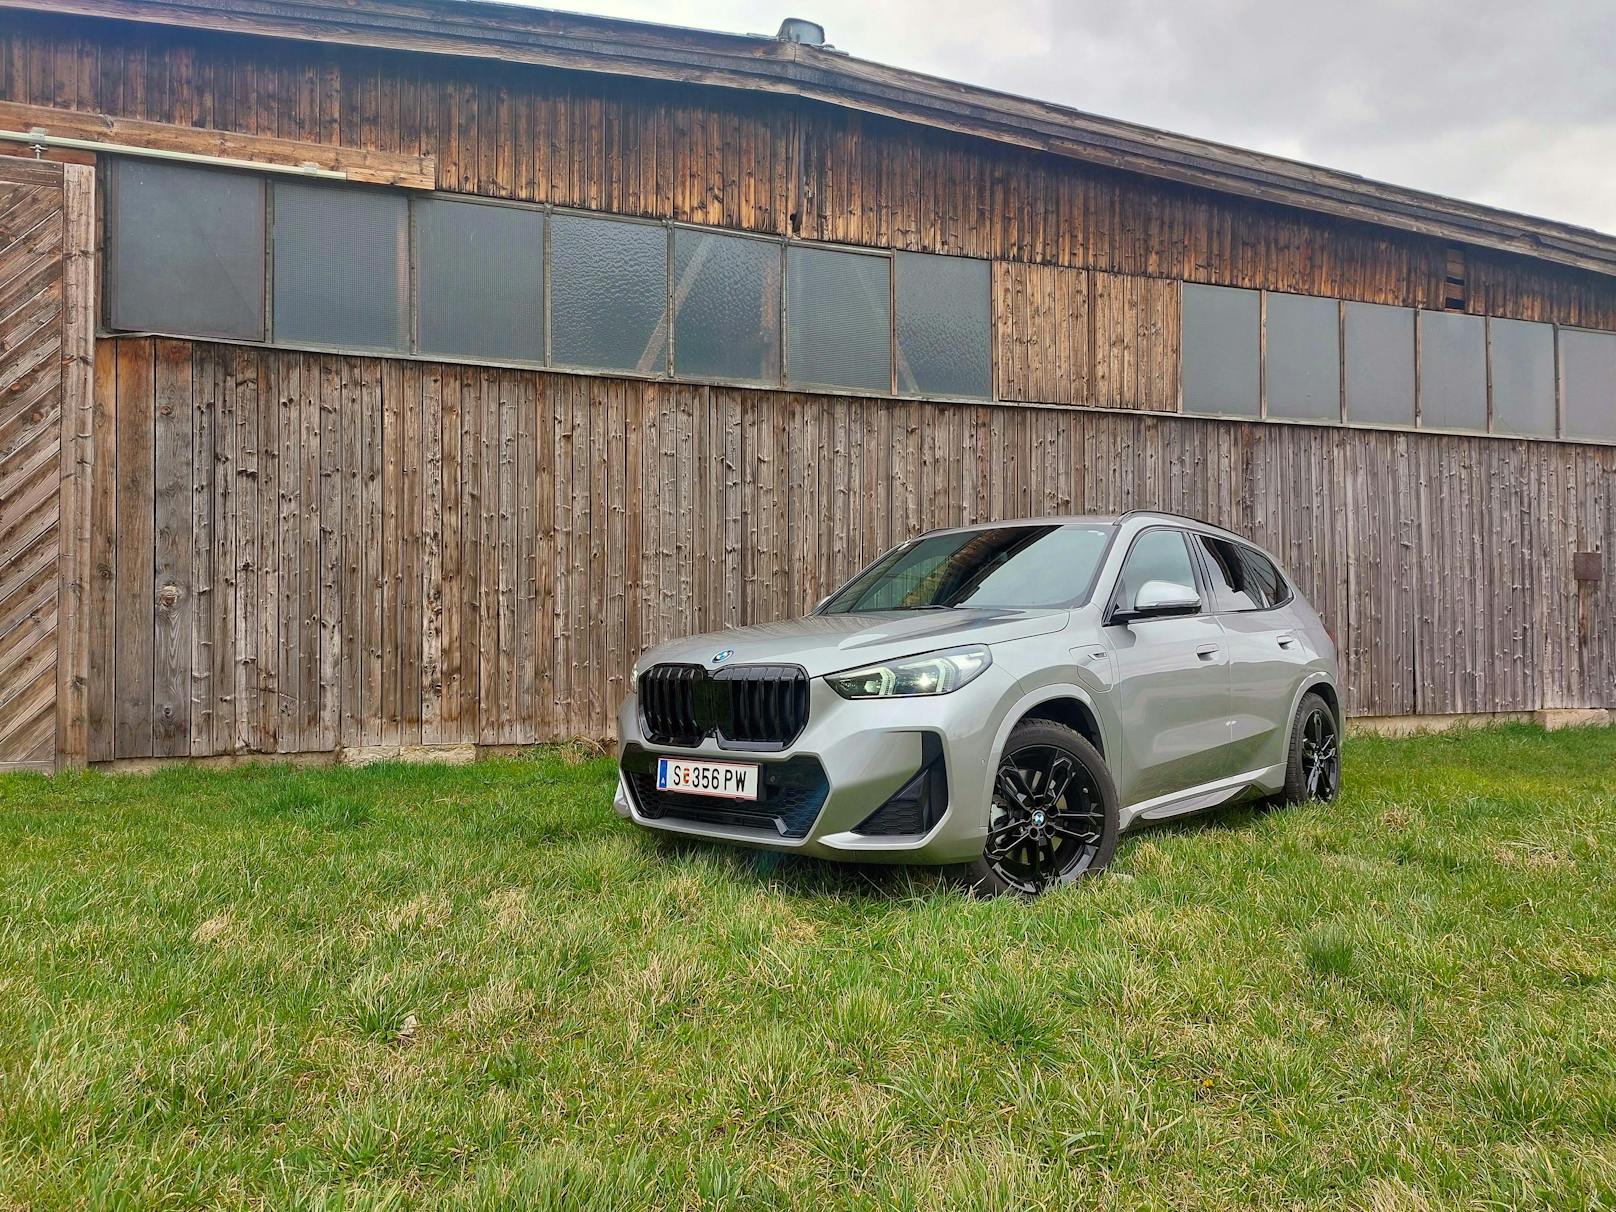 Neuer BMW X1 macht im Test Schritt nach vorne